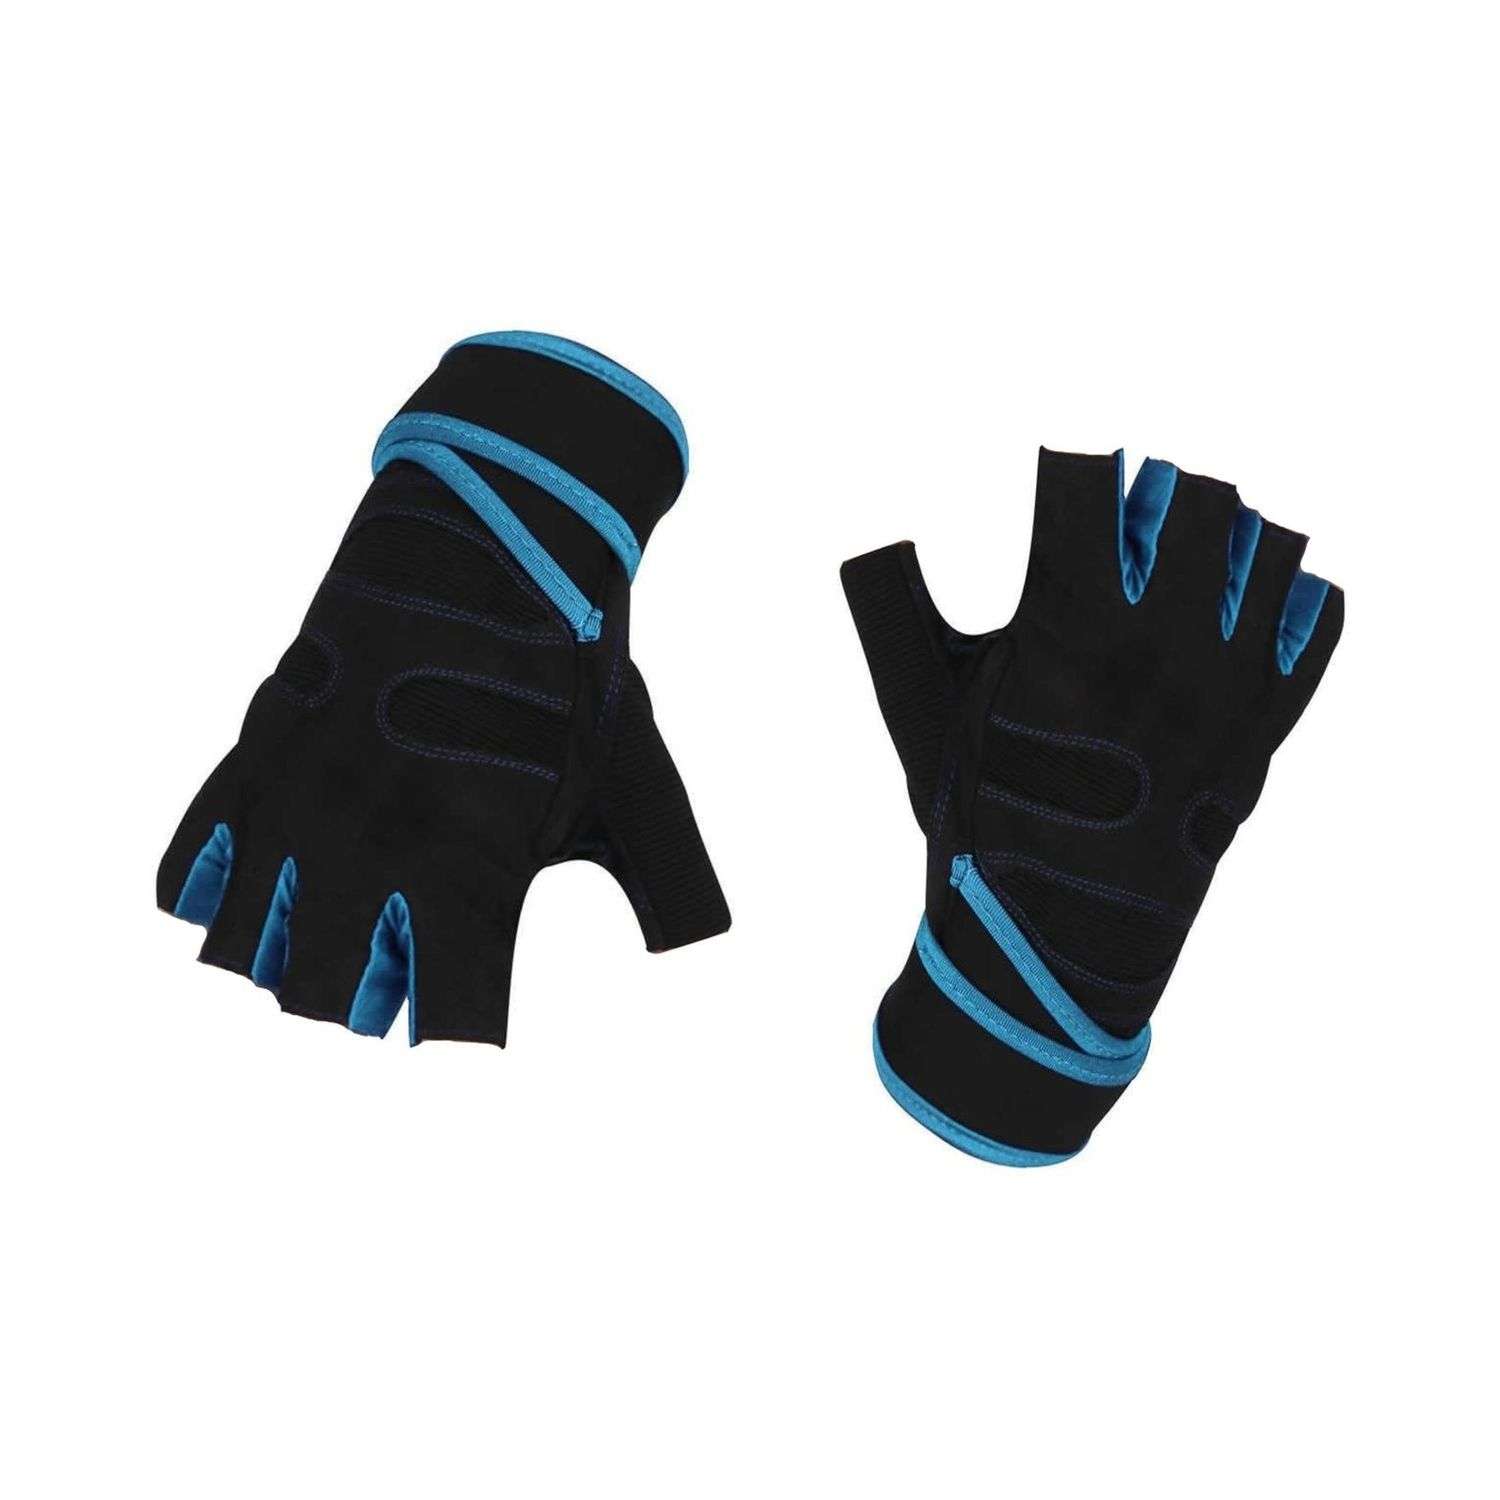 Нейлоновые перчатки NPOSS противоскользящие голубые размер L - фото 1